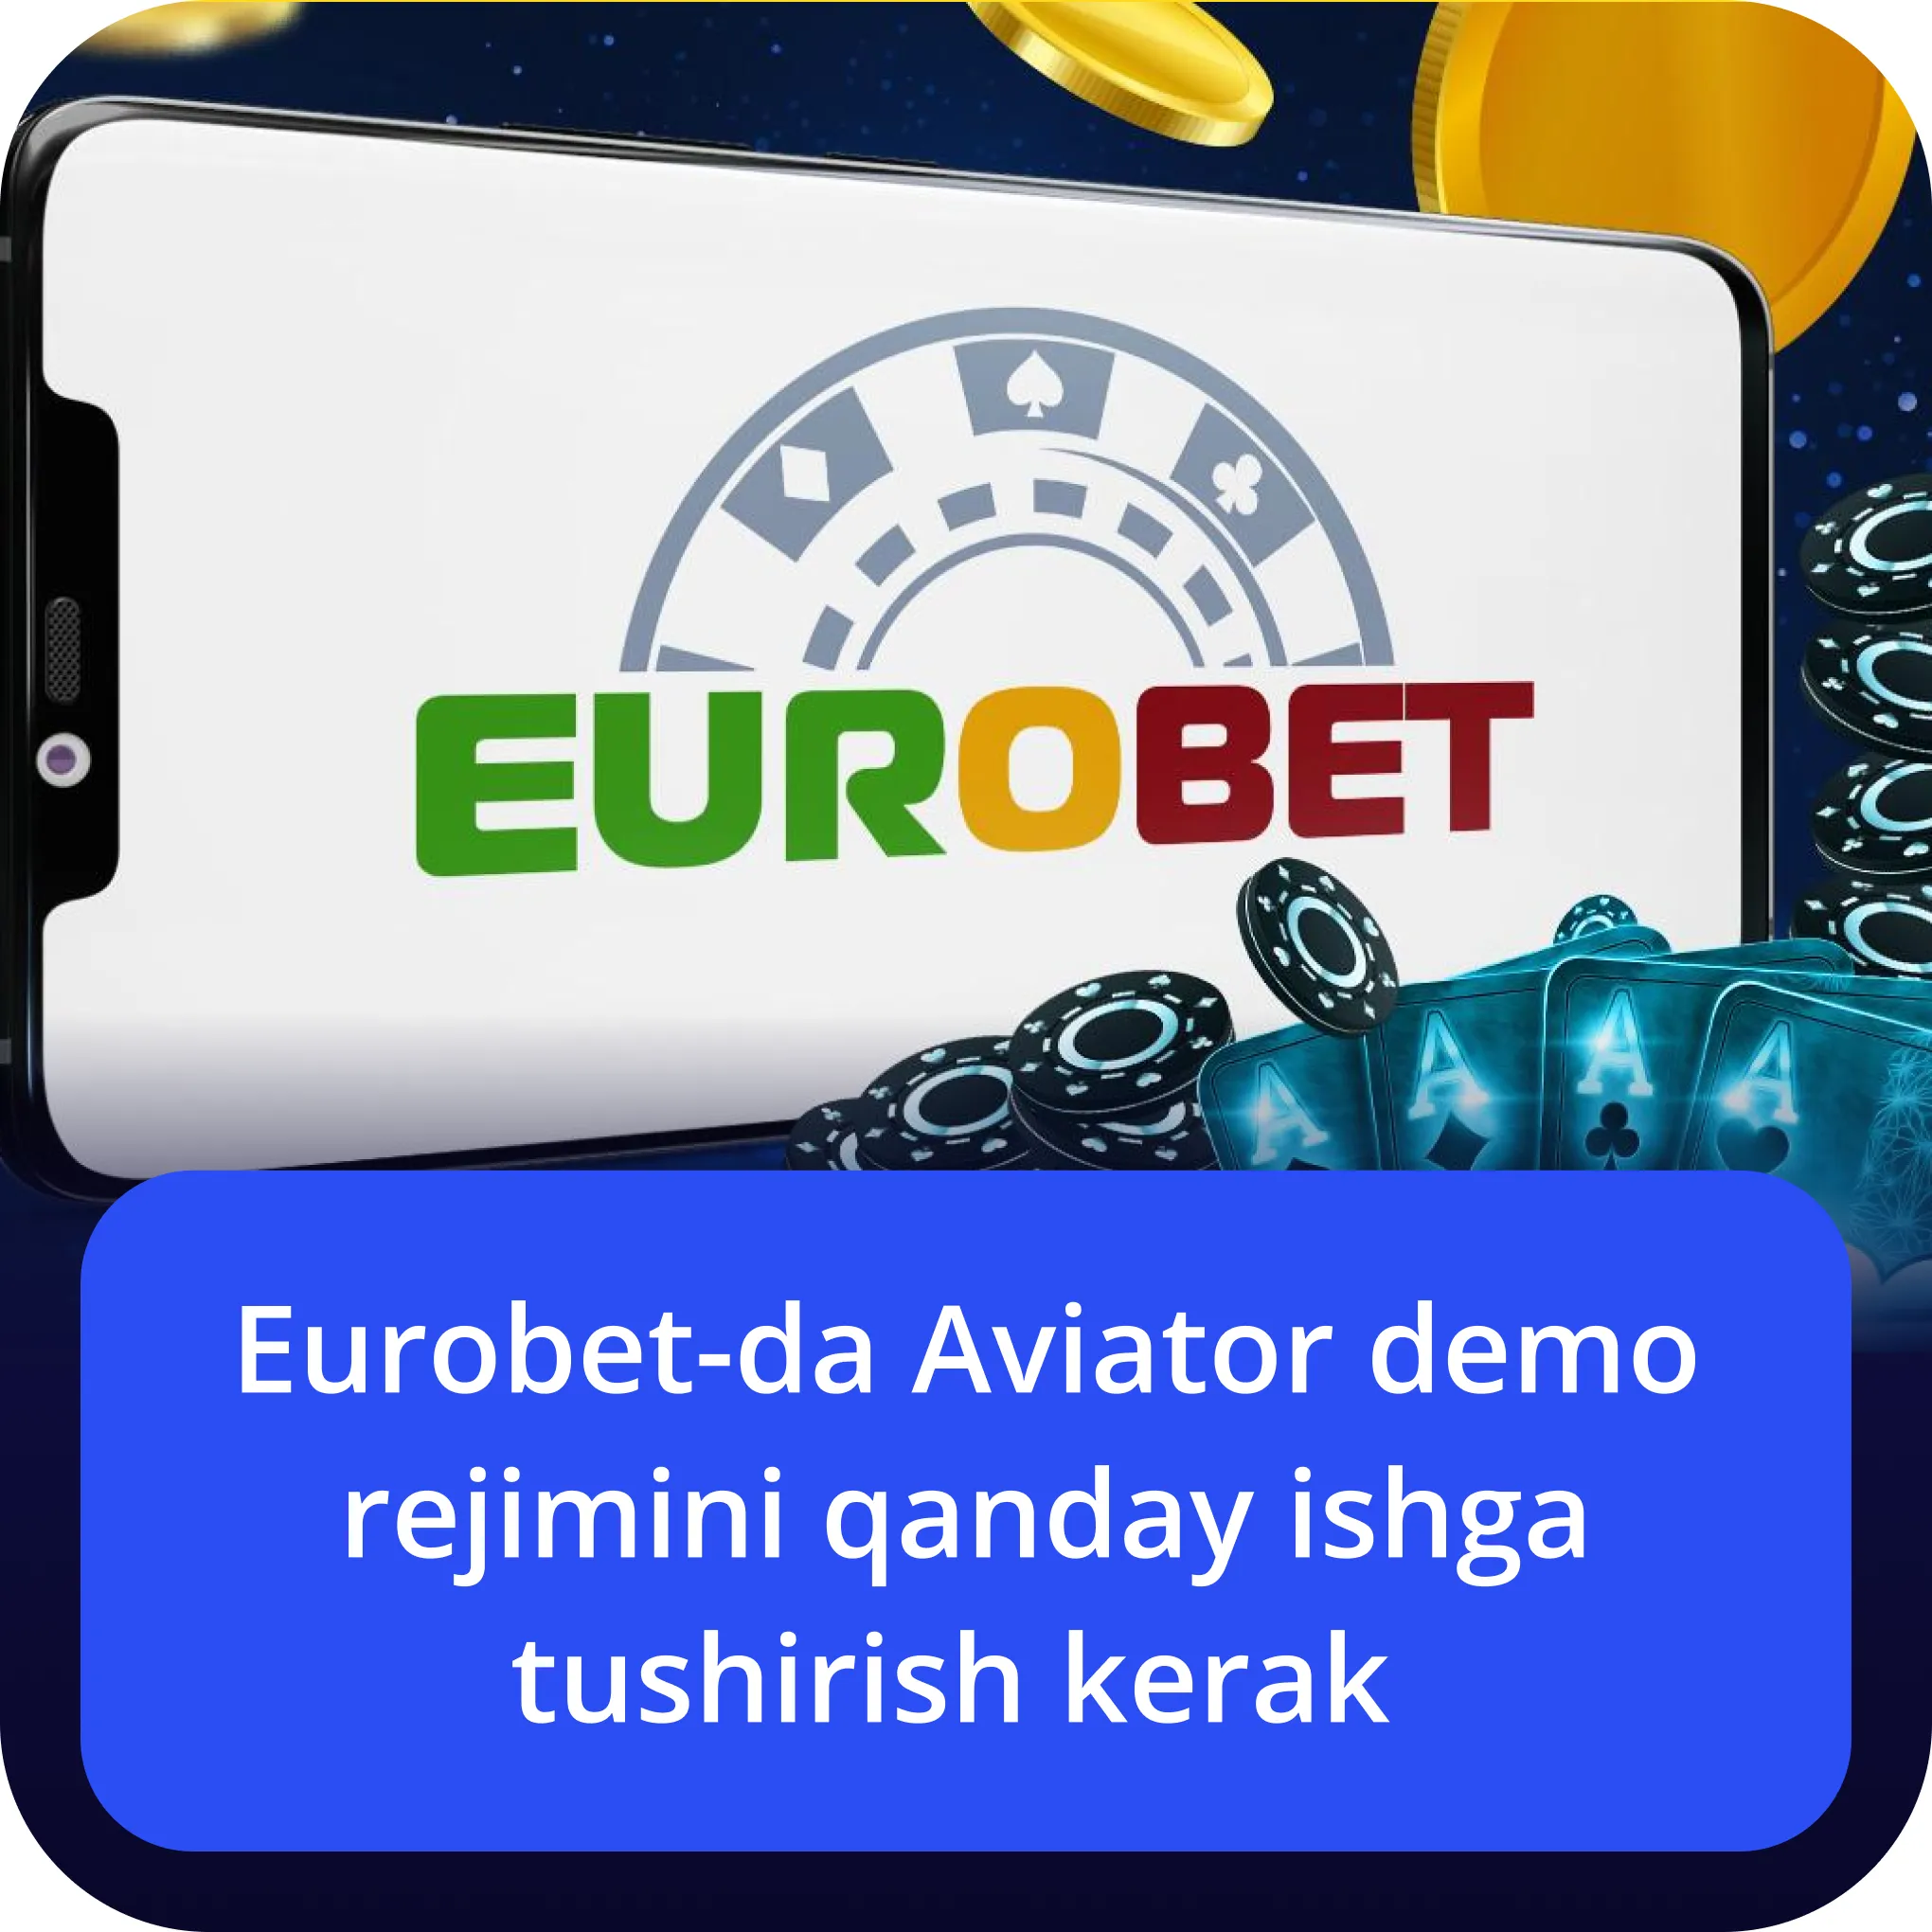 eurobet aviator demo